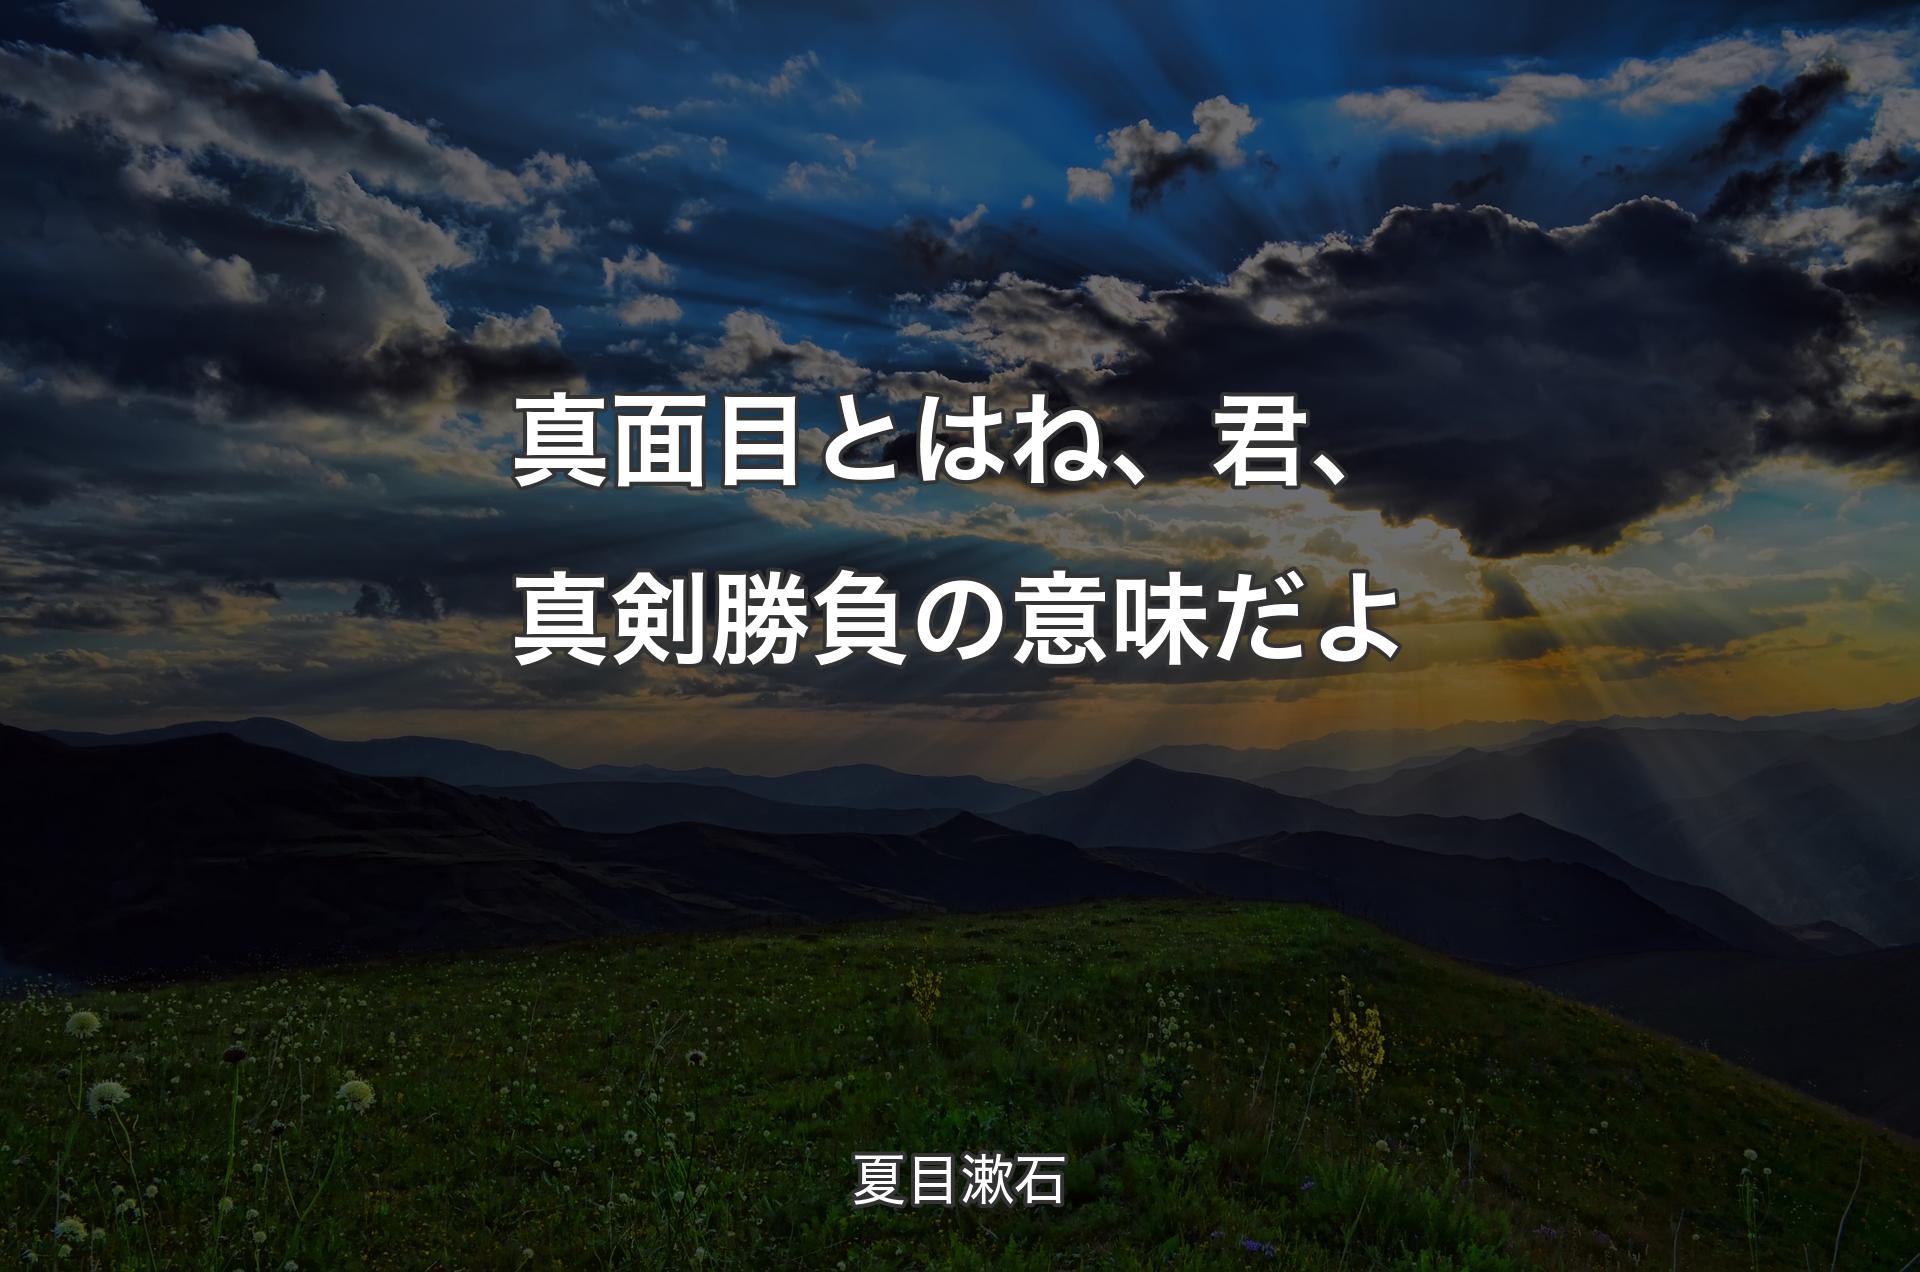 真面目とはね、君、真剣勝負の意味だよ - 夏目漱石